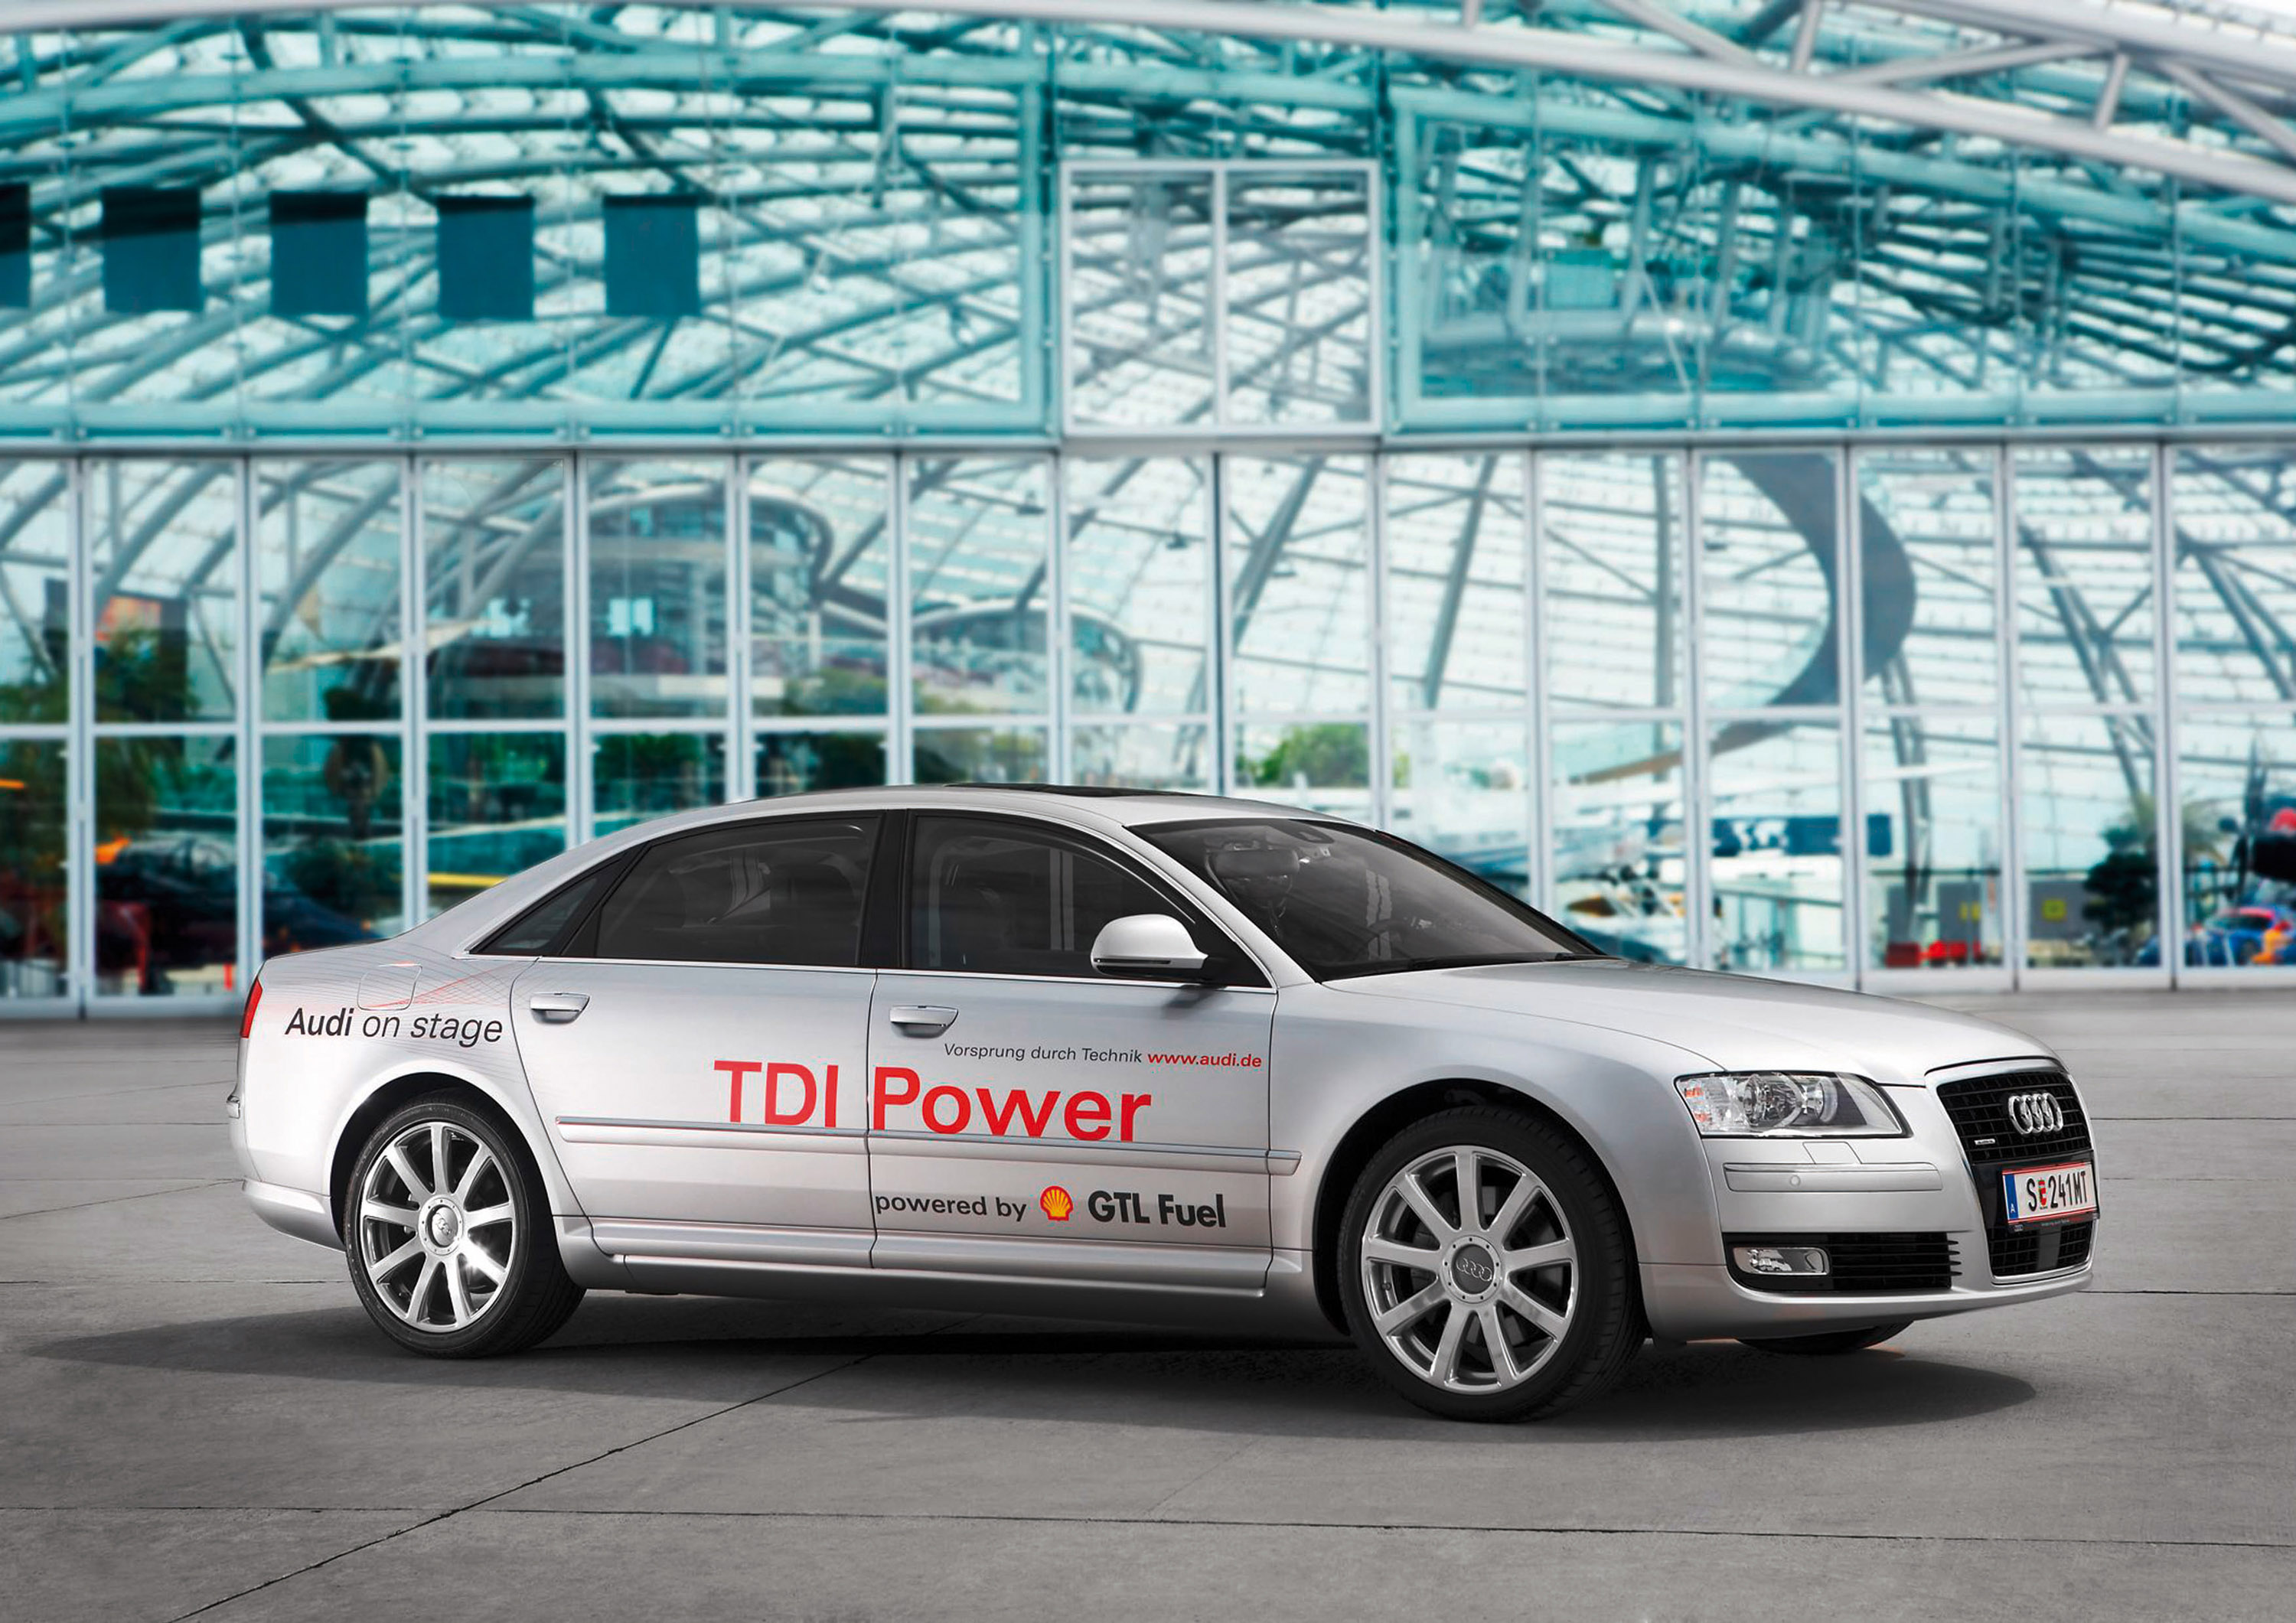 Audi GTI Power GTL Fuel